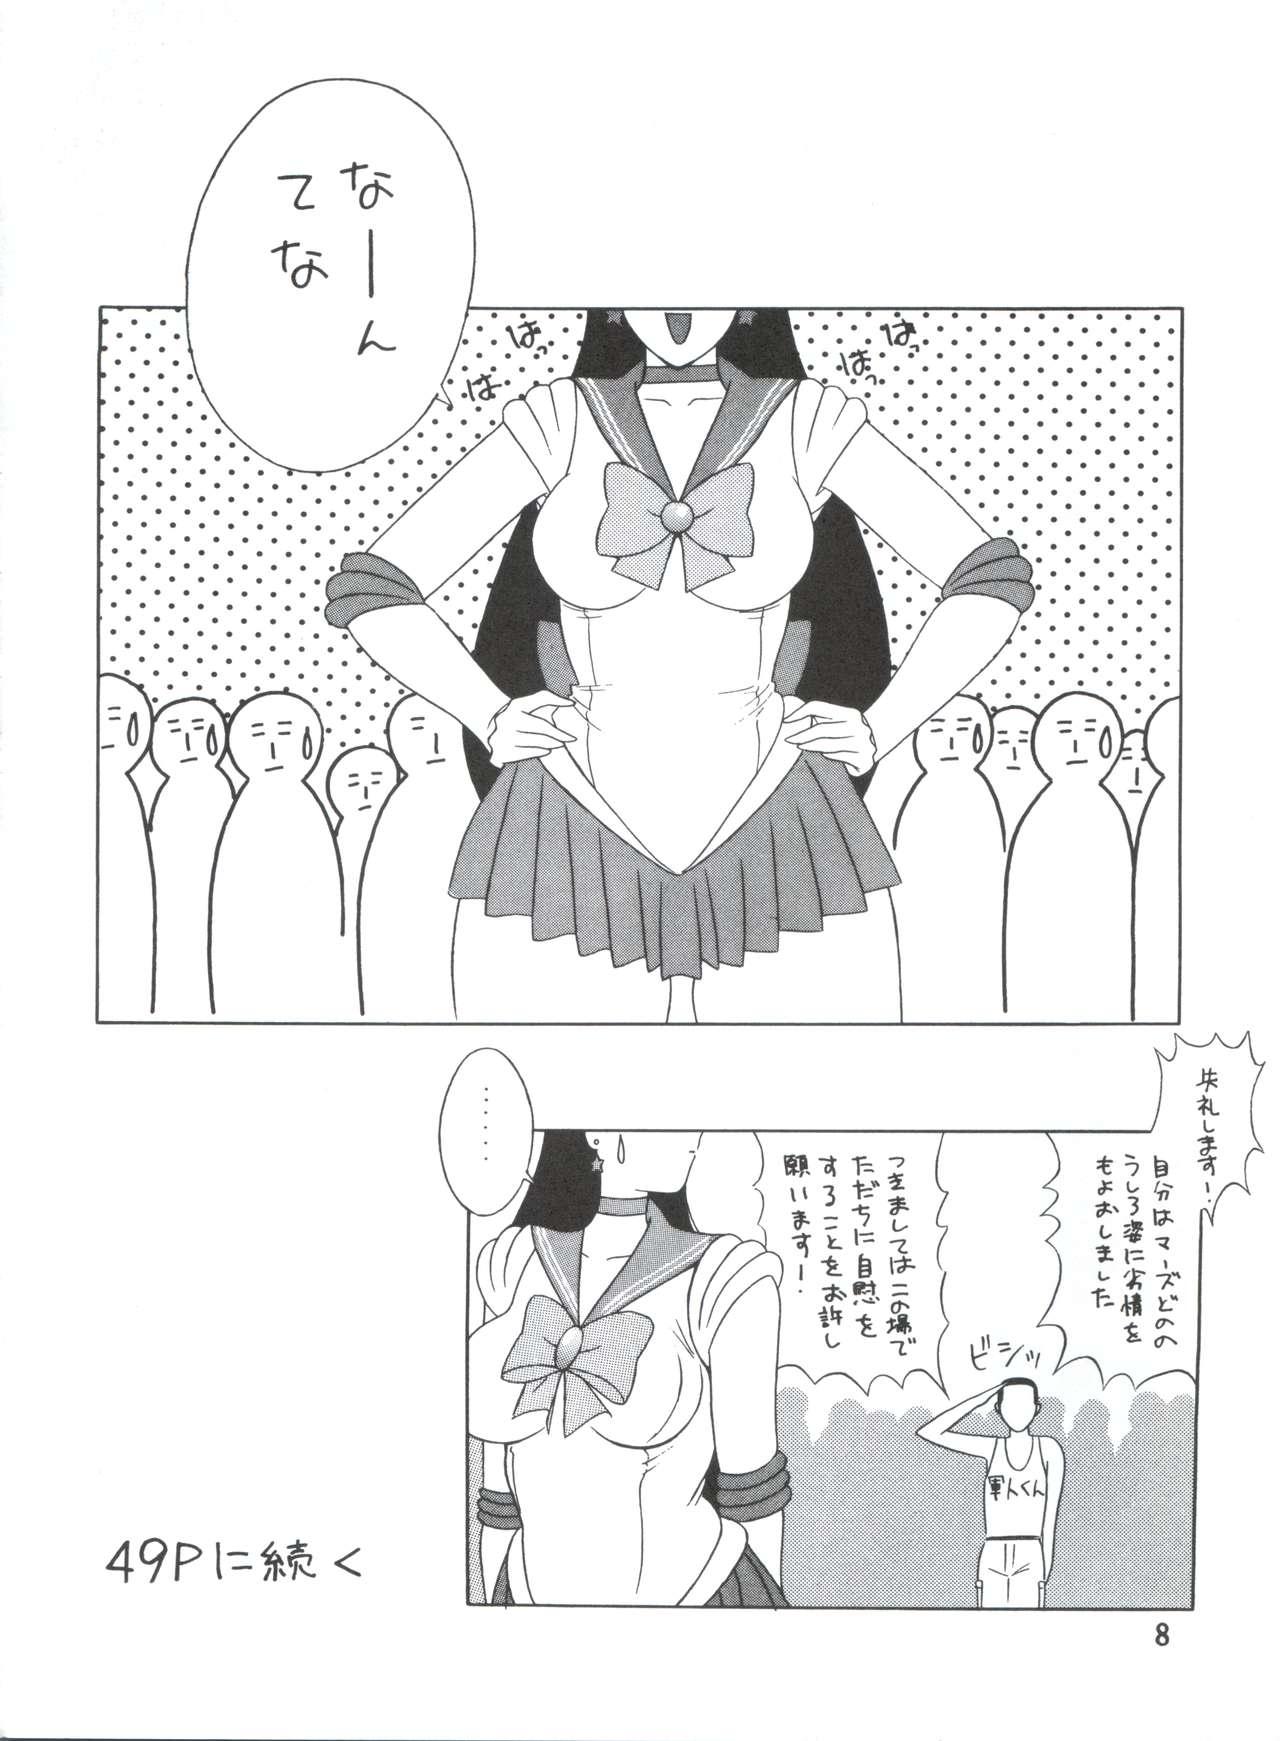 Jerkoff Voice of Mars - Sailor moon Urusei yatsura Dirty pair Maison ikkoku Feet - Page 7